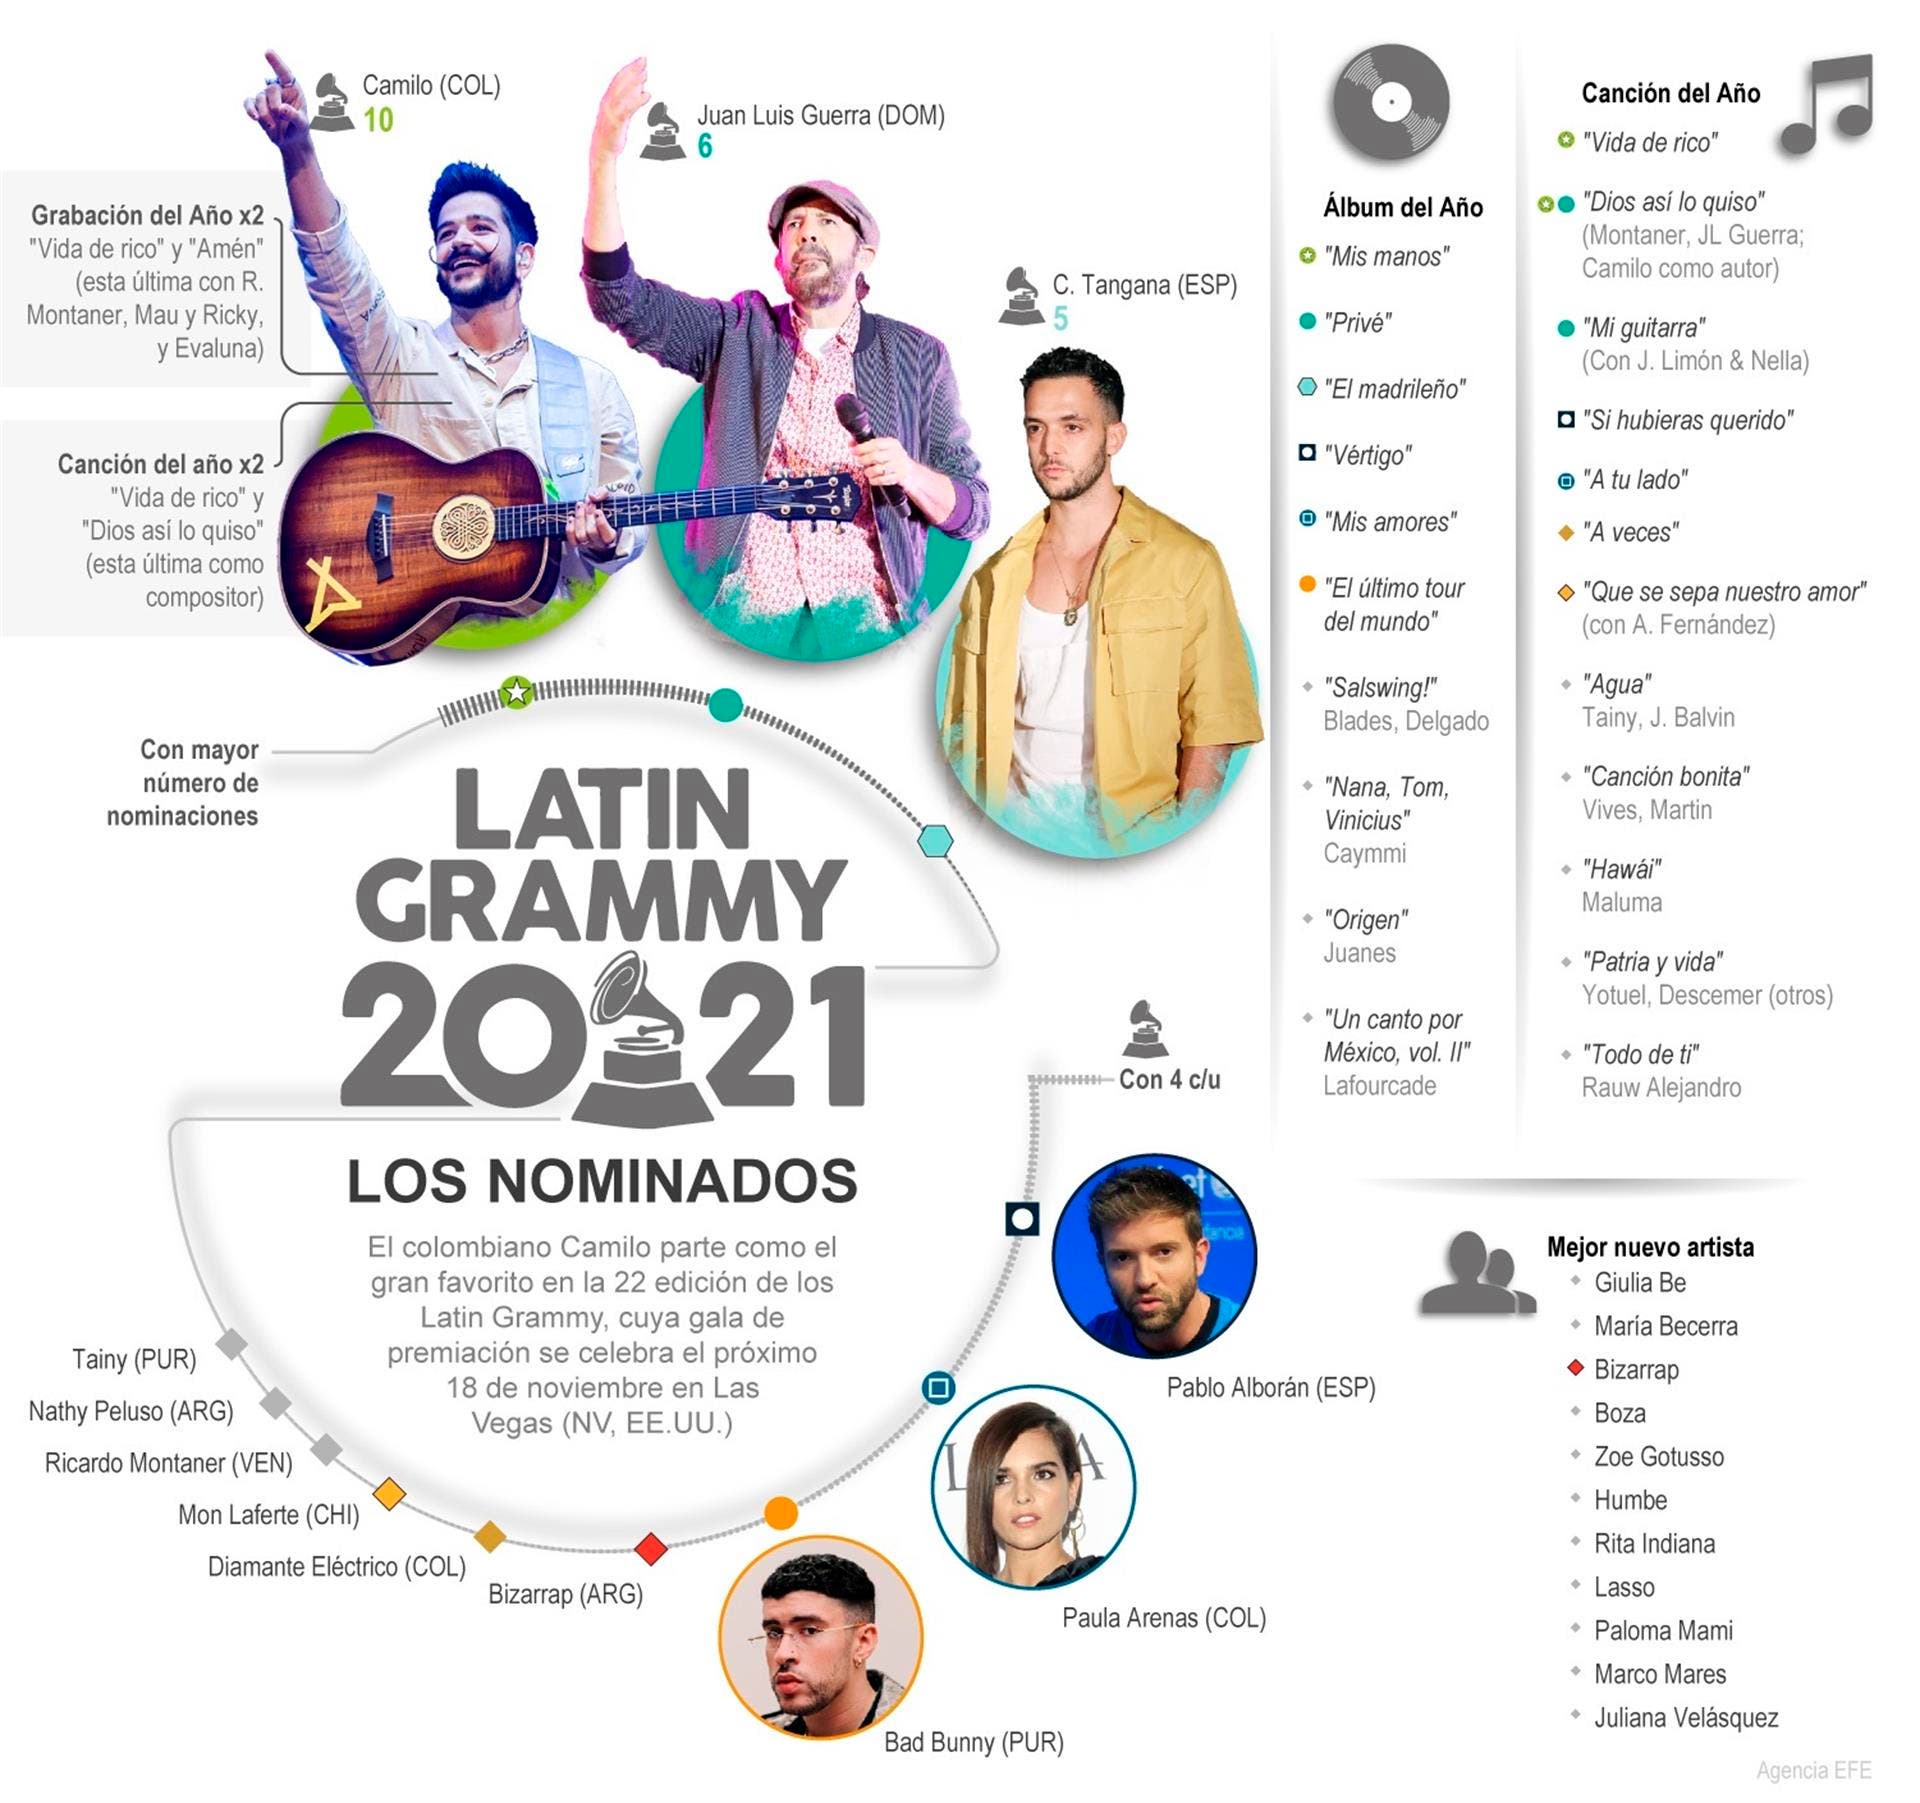 Latin Grammy 2021: Los nominados